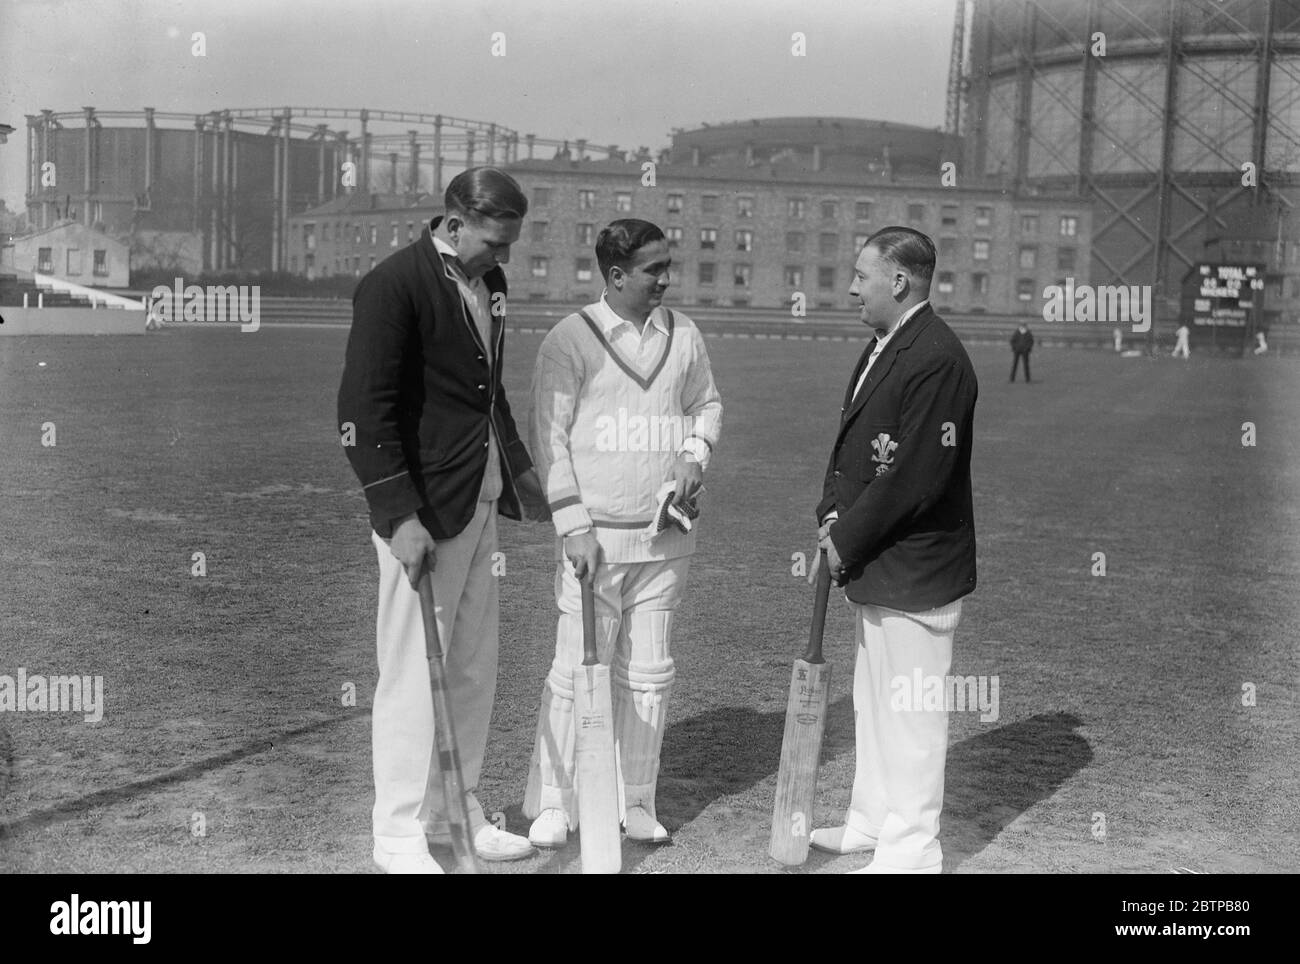 La recrue indienne de Surrey . Un cricketer indien nommé Desai doit participer aux matchs du Surrey Trial à l'Oval . Desai ( au centre ) avec deux des professionnels de Surrey à l'Oval . 17 avril 1930 Banque D'Images